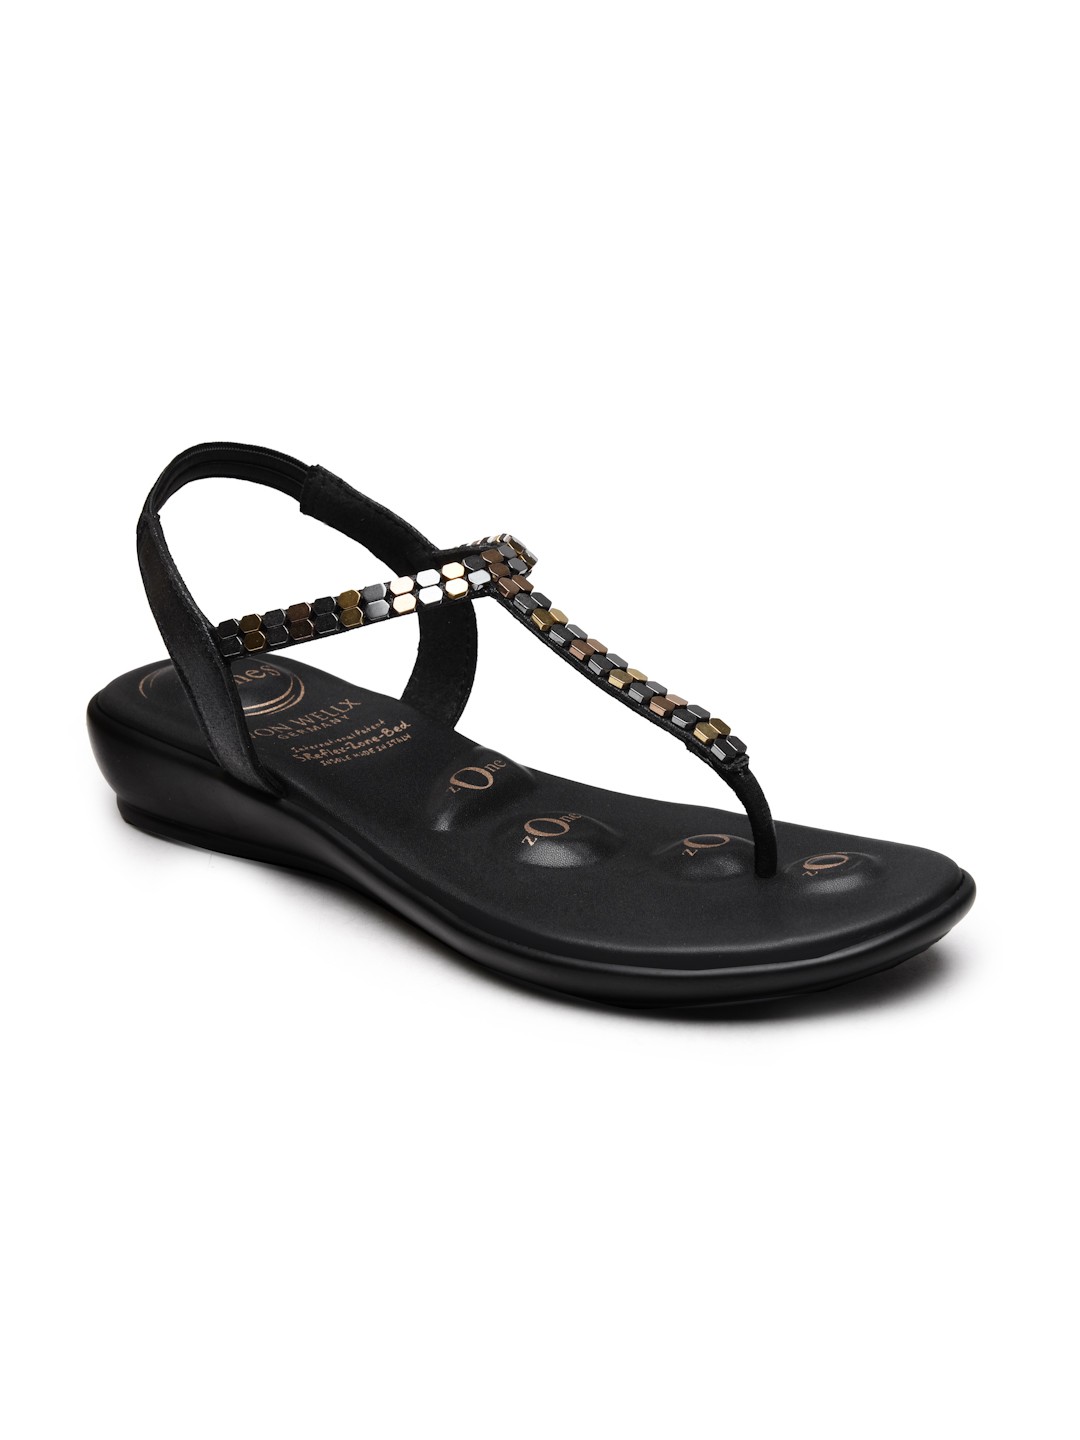 Buy Von Wellx Germany Comfort Women's Black Casual Sandals Regina Online in Nashik